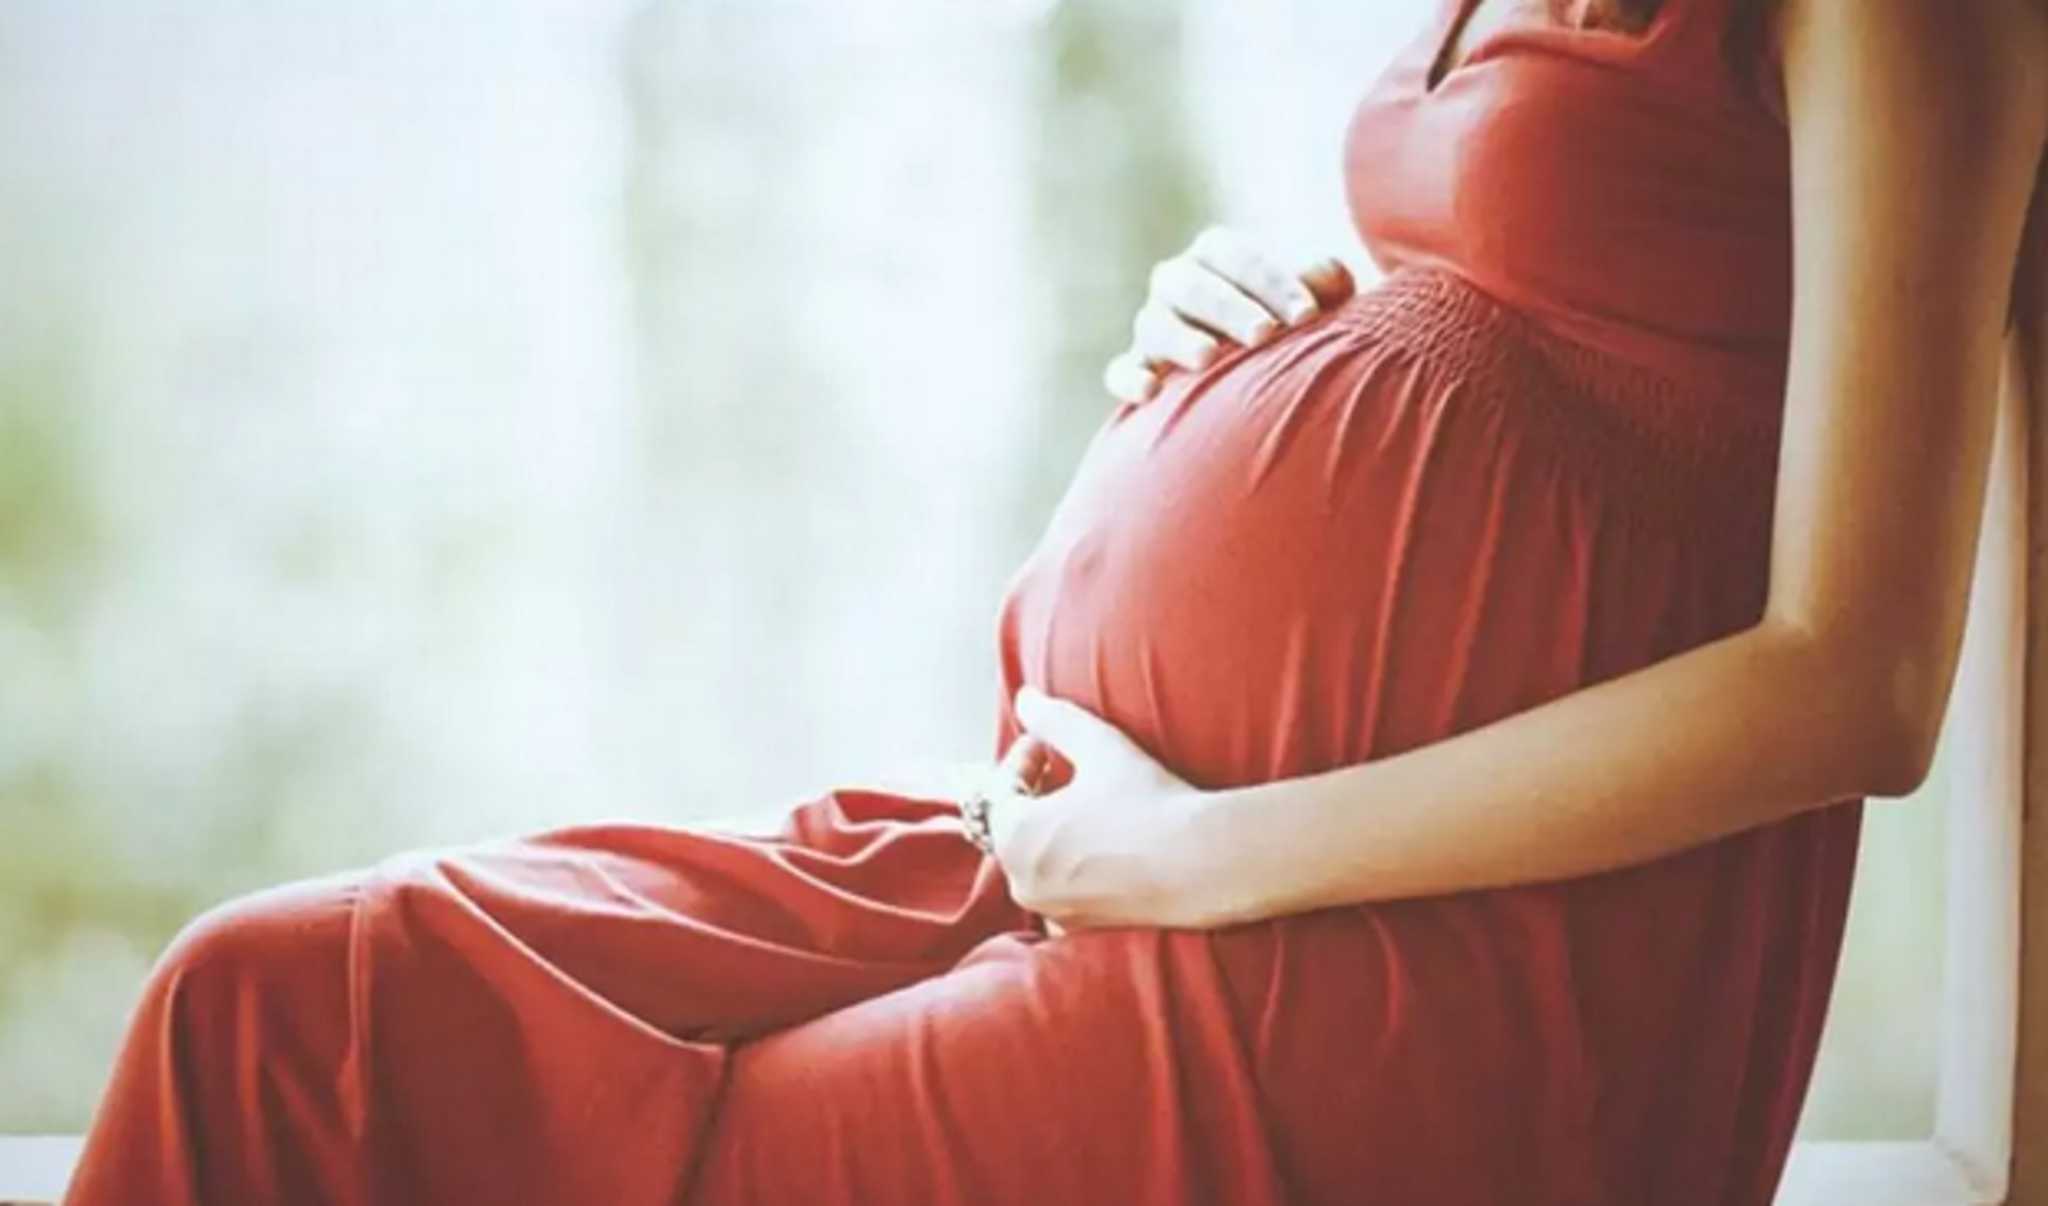 Έβρος: Πέθανε έγκυος μαζί με το αγέννητο παιδί της